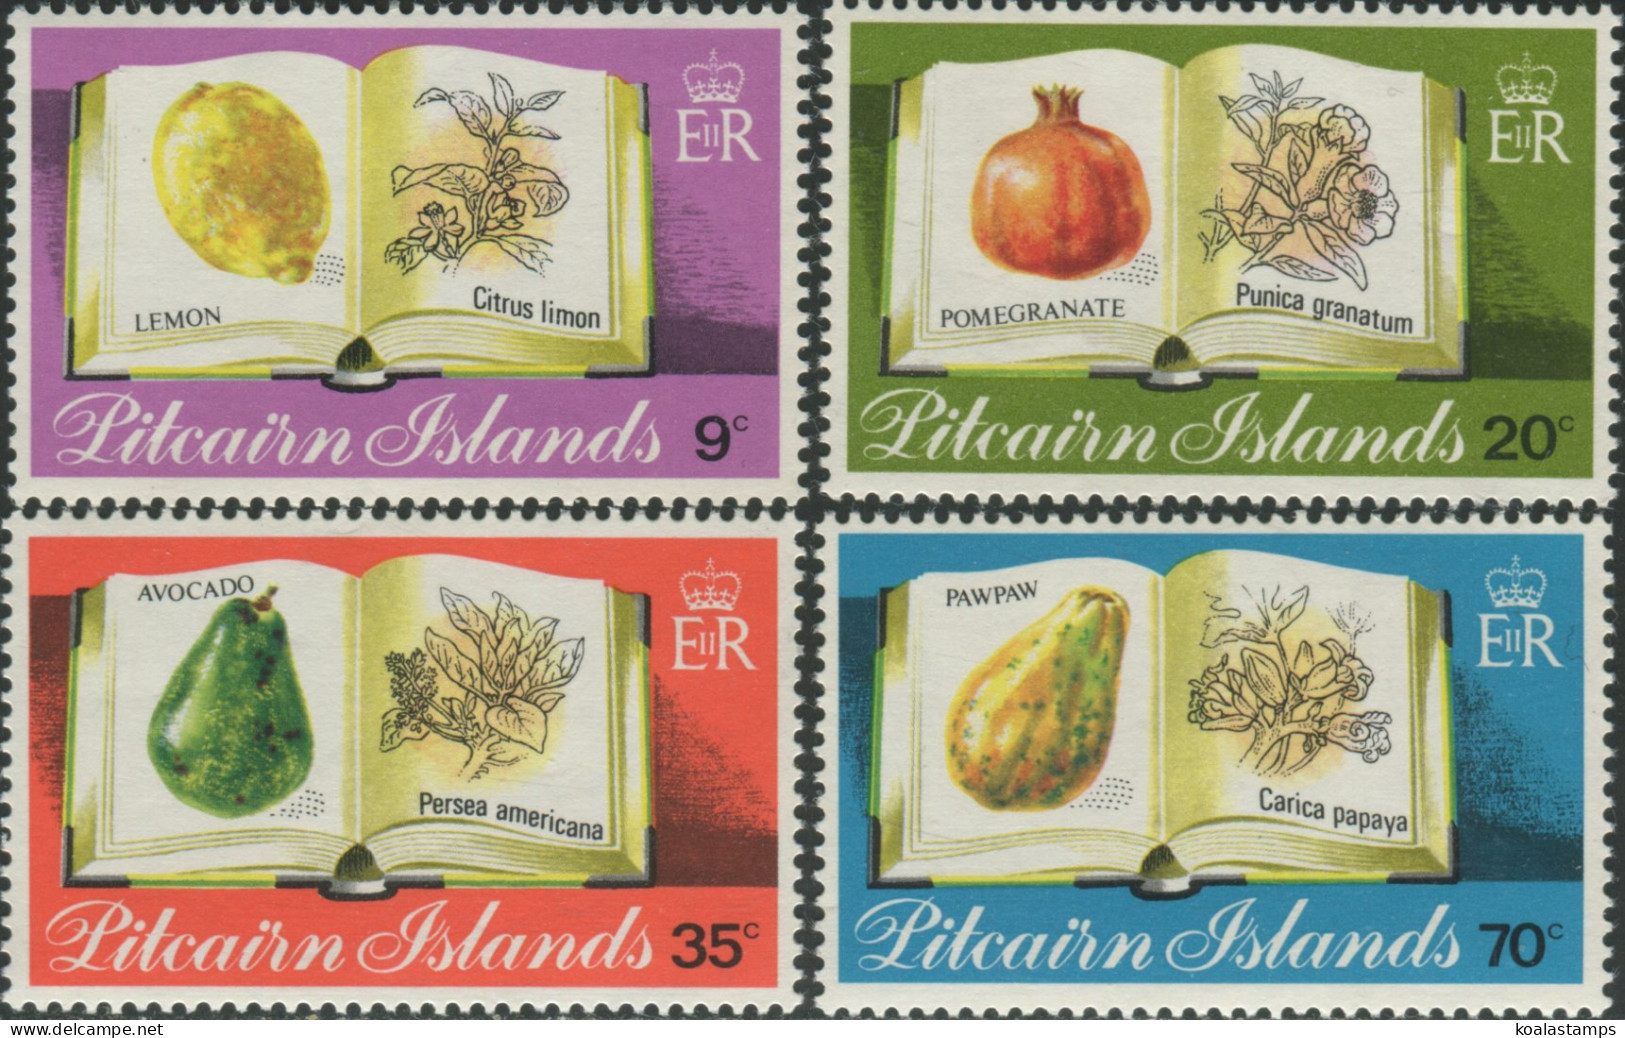 Pitcairn Islands 1982 SG222-225 Fruit Set MNH - Pitcairn Islands